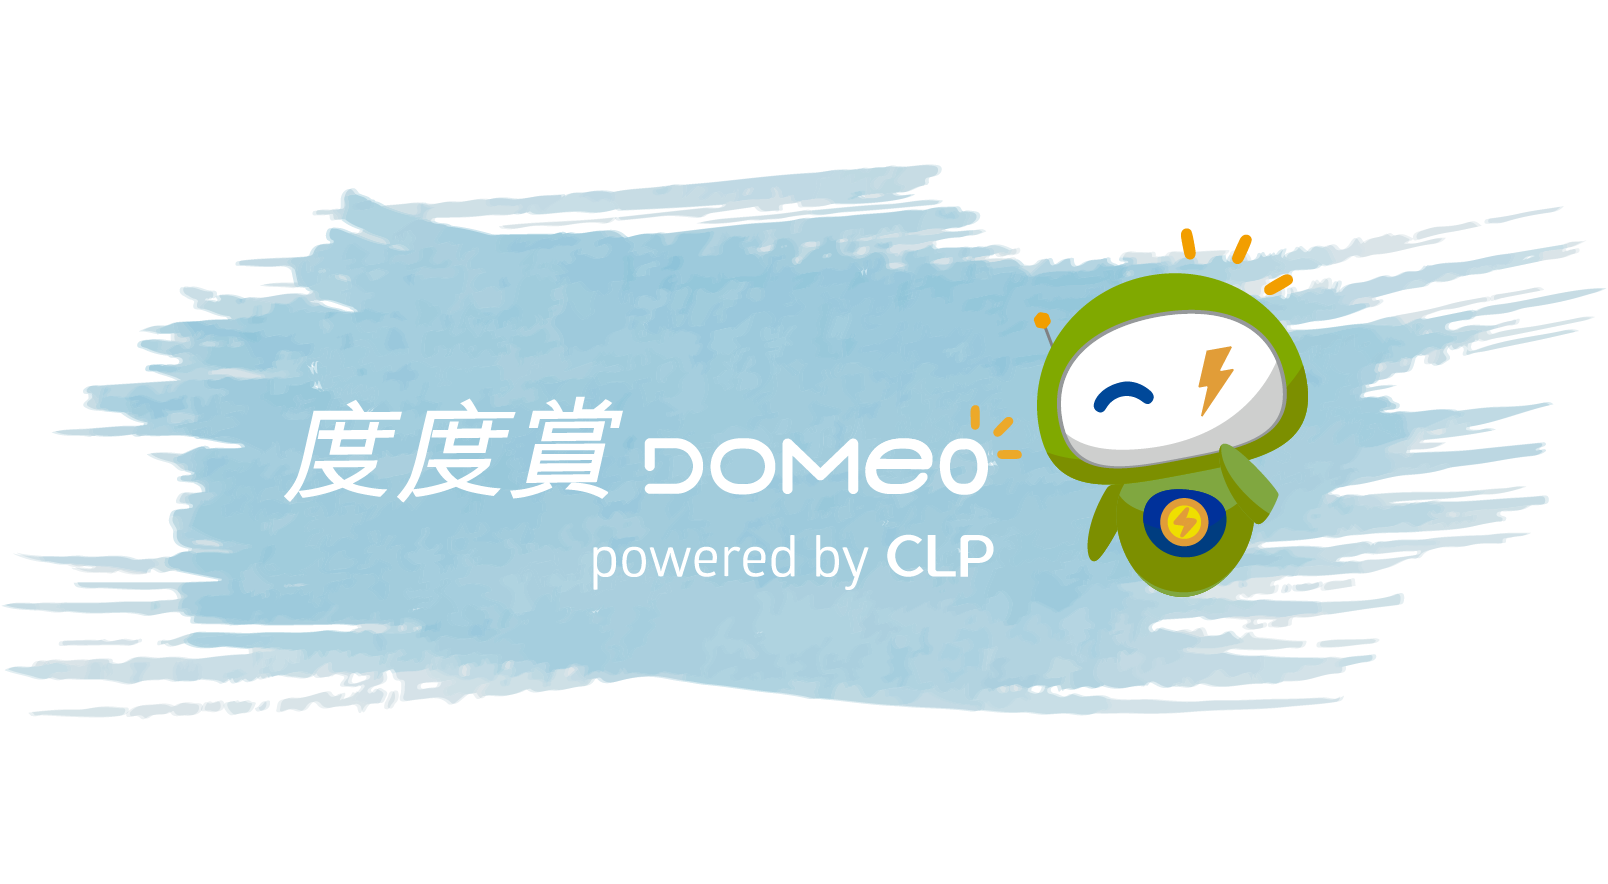 What is Domeo rewards platform?